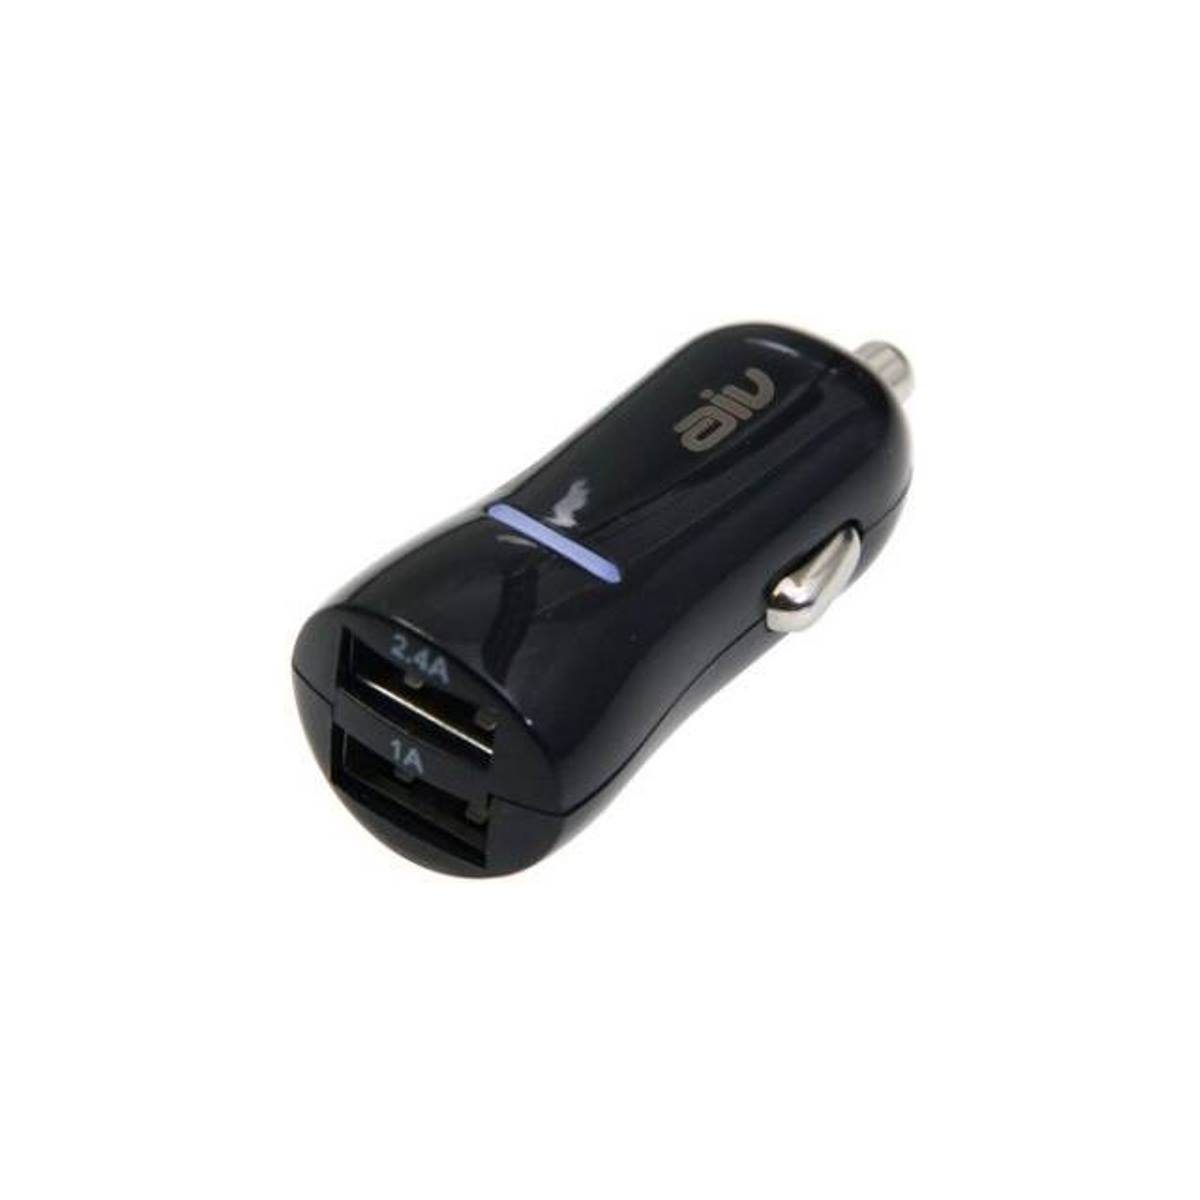 deleyCON 2,4A Zigarettenanzünder USB Ladegerät - 2400mA